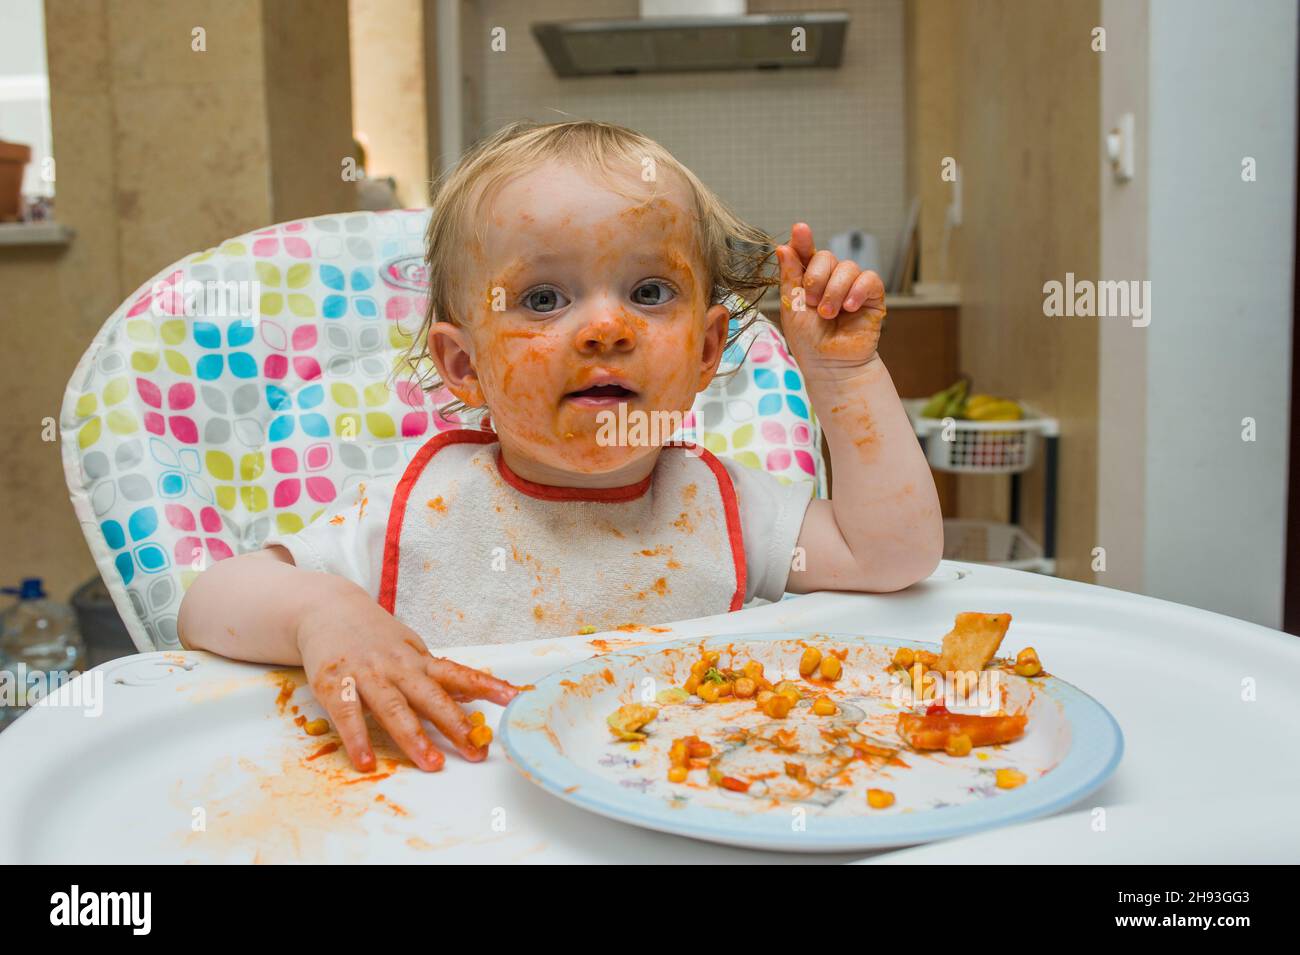 Ein kleines Mädchen (15 Monate alt) isst eine Mahlzeit aus süßem Mais und Tomatensauce auf unordentliche Weise und spielt mit ihrem Essen auf einem Hochstuhl in ihrem Haus. Stockfoto